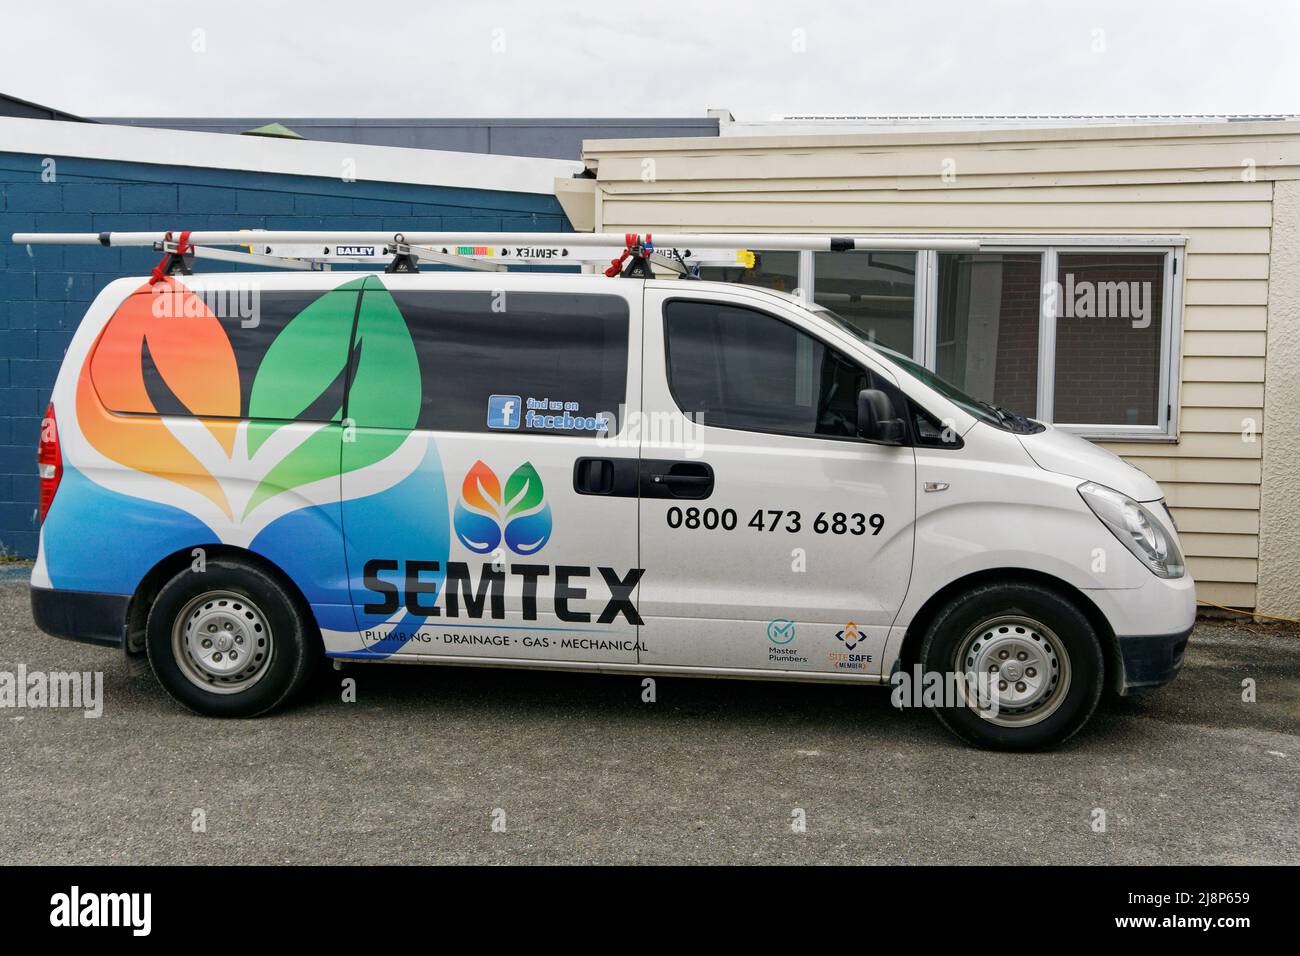 Aotearoa / Nouvelle-Zélande - 17 mai 2022 : la fourgonnette d'une compagnie de plomberie appelée Semtex garée dans une rue. Banque D'Images